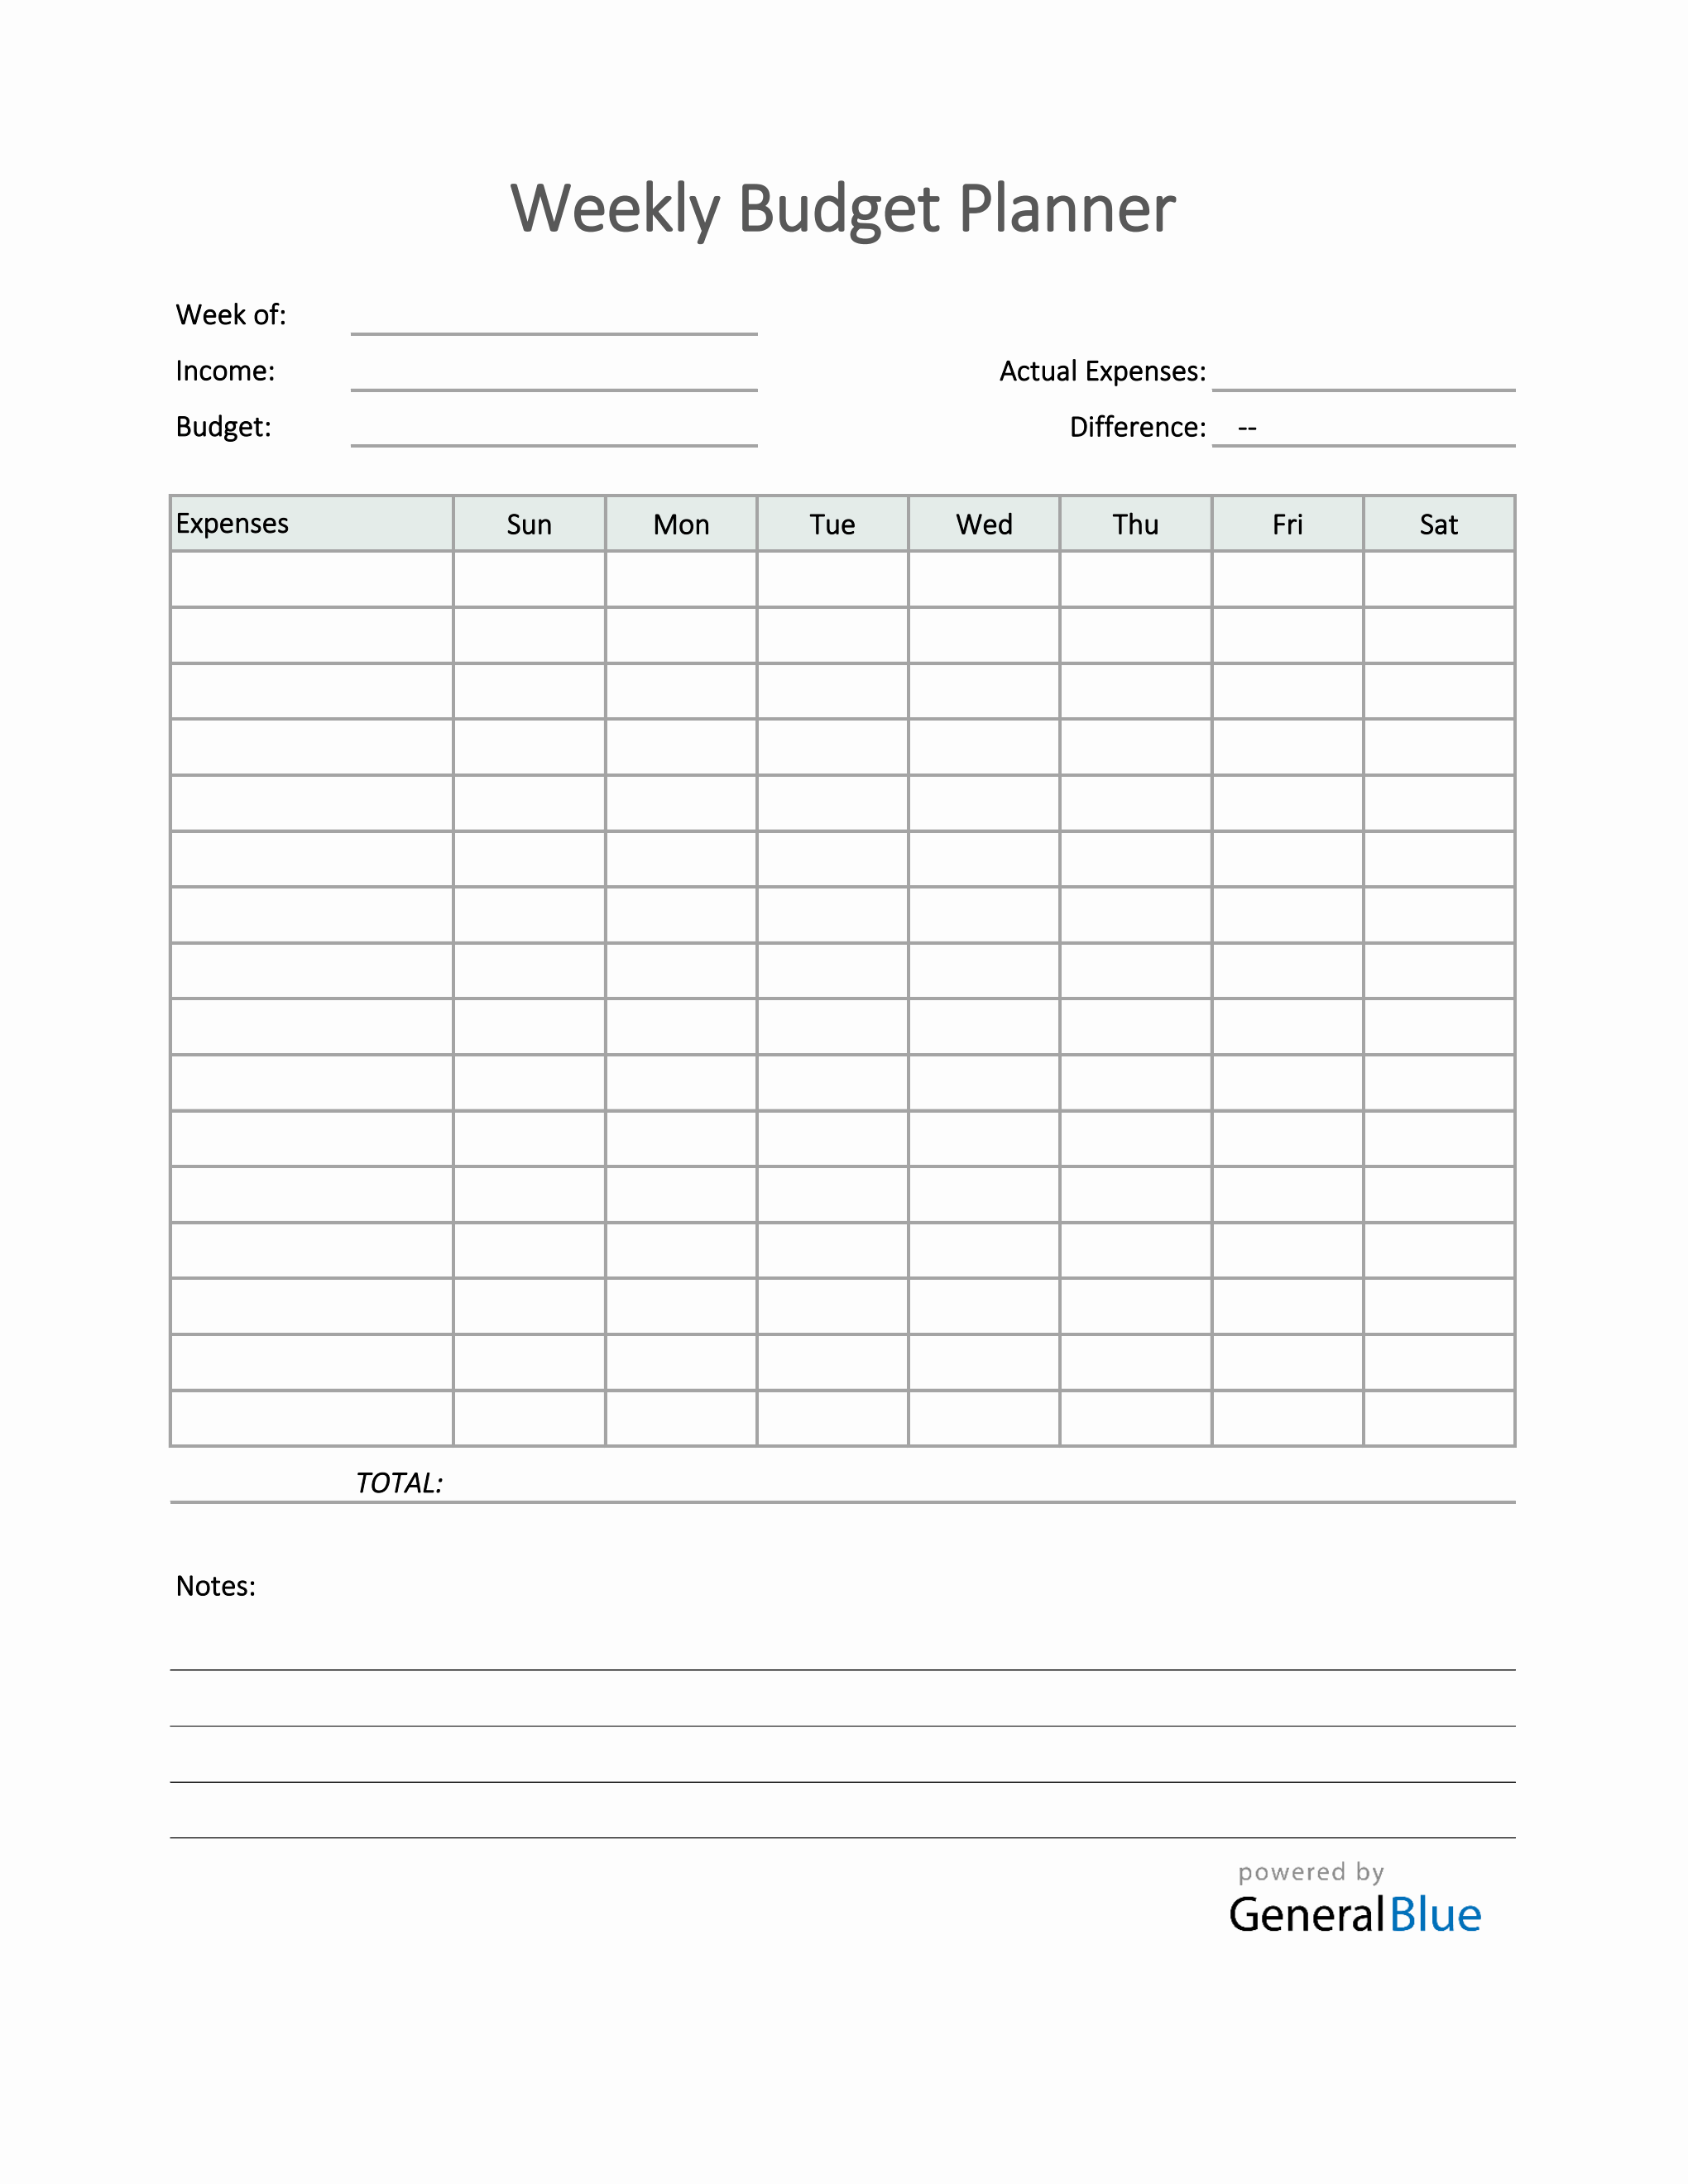 bi-weekly-budget-template-printable-free-printable-worksheet